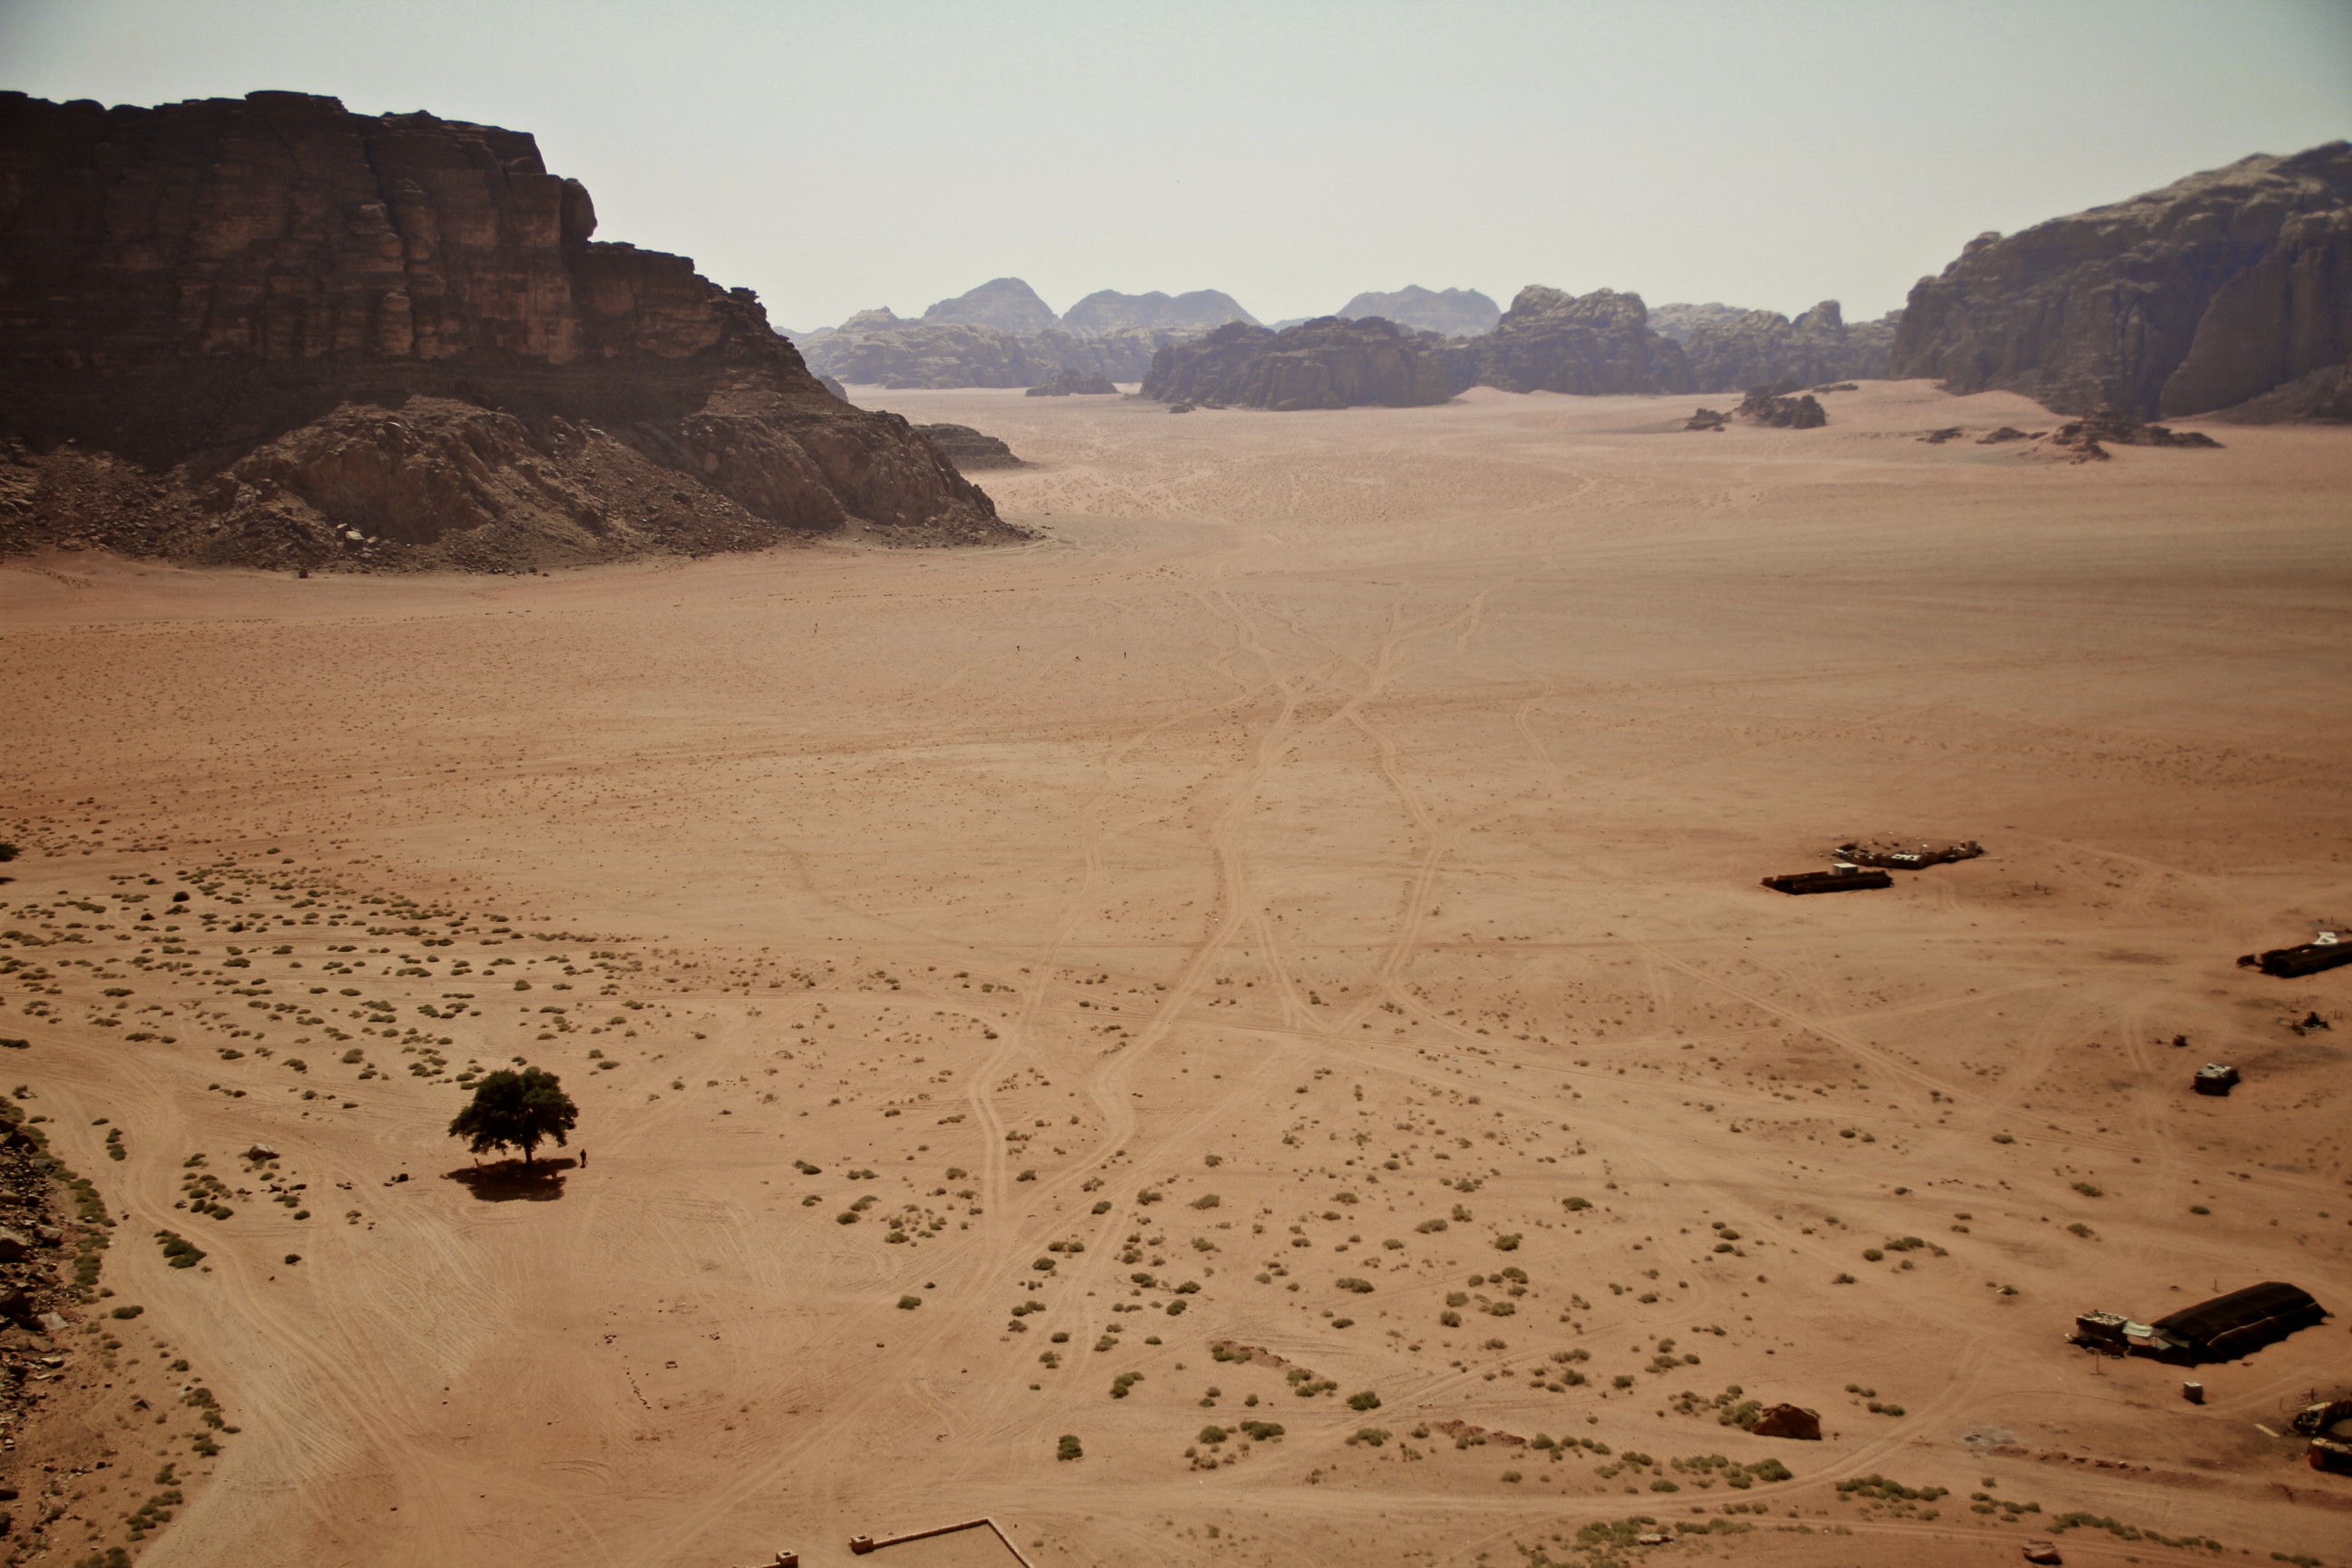 Résultat de recherche d'images pour "désert mali"